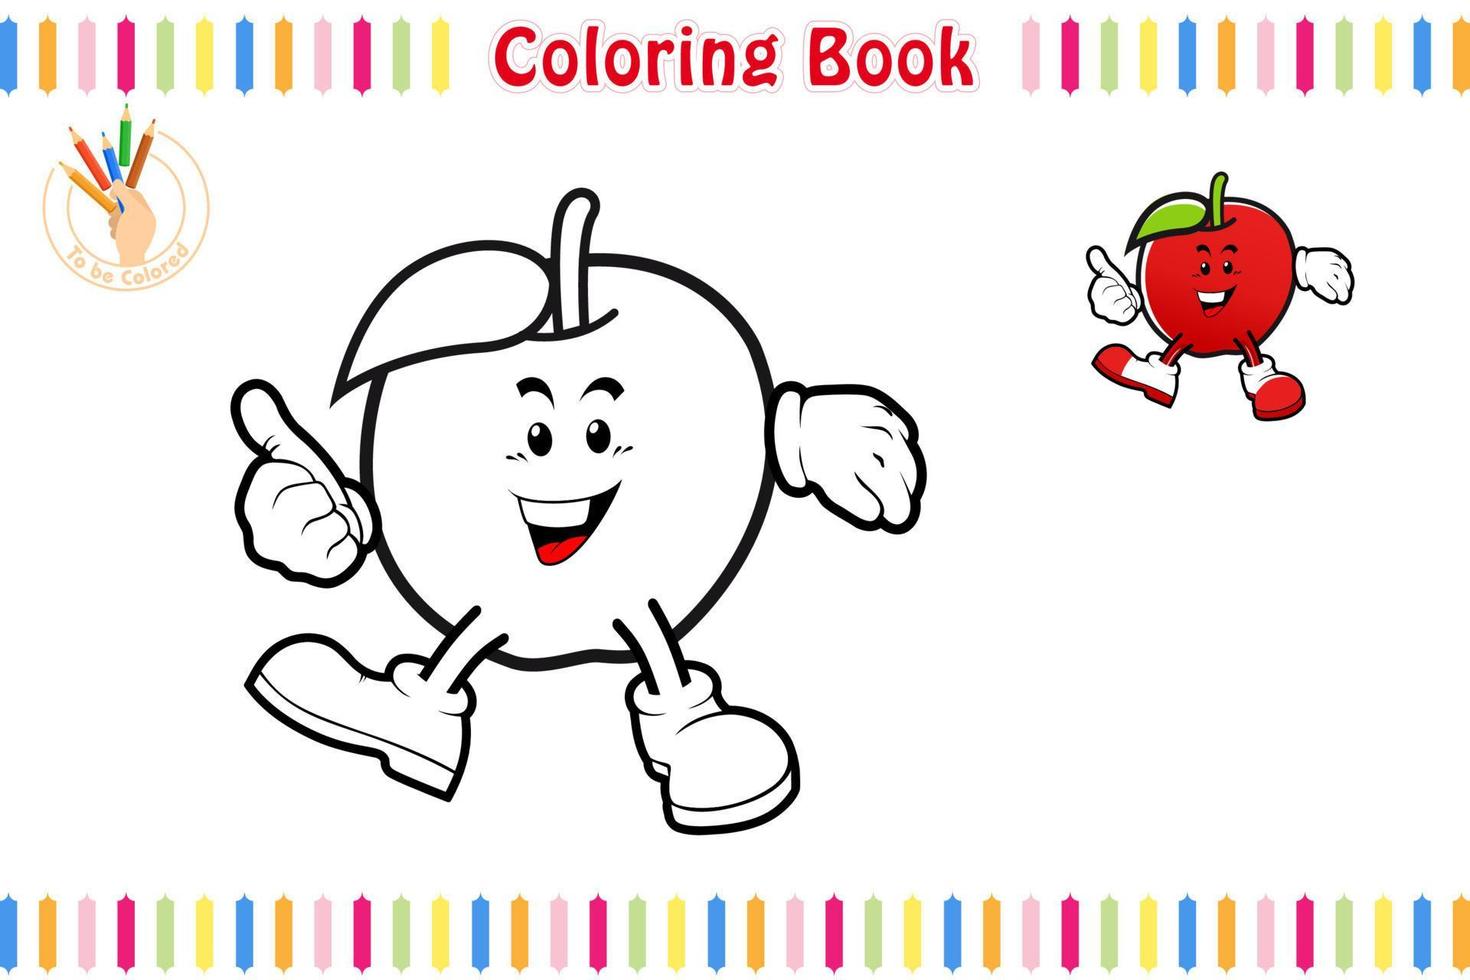 livro de colorir com um estilo de desenho animado de frutas, ilustração em vetor de planilha para impressão de jogo educacional para crianças